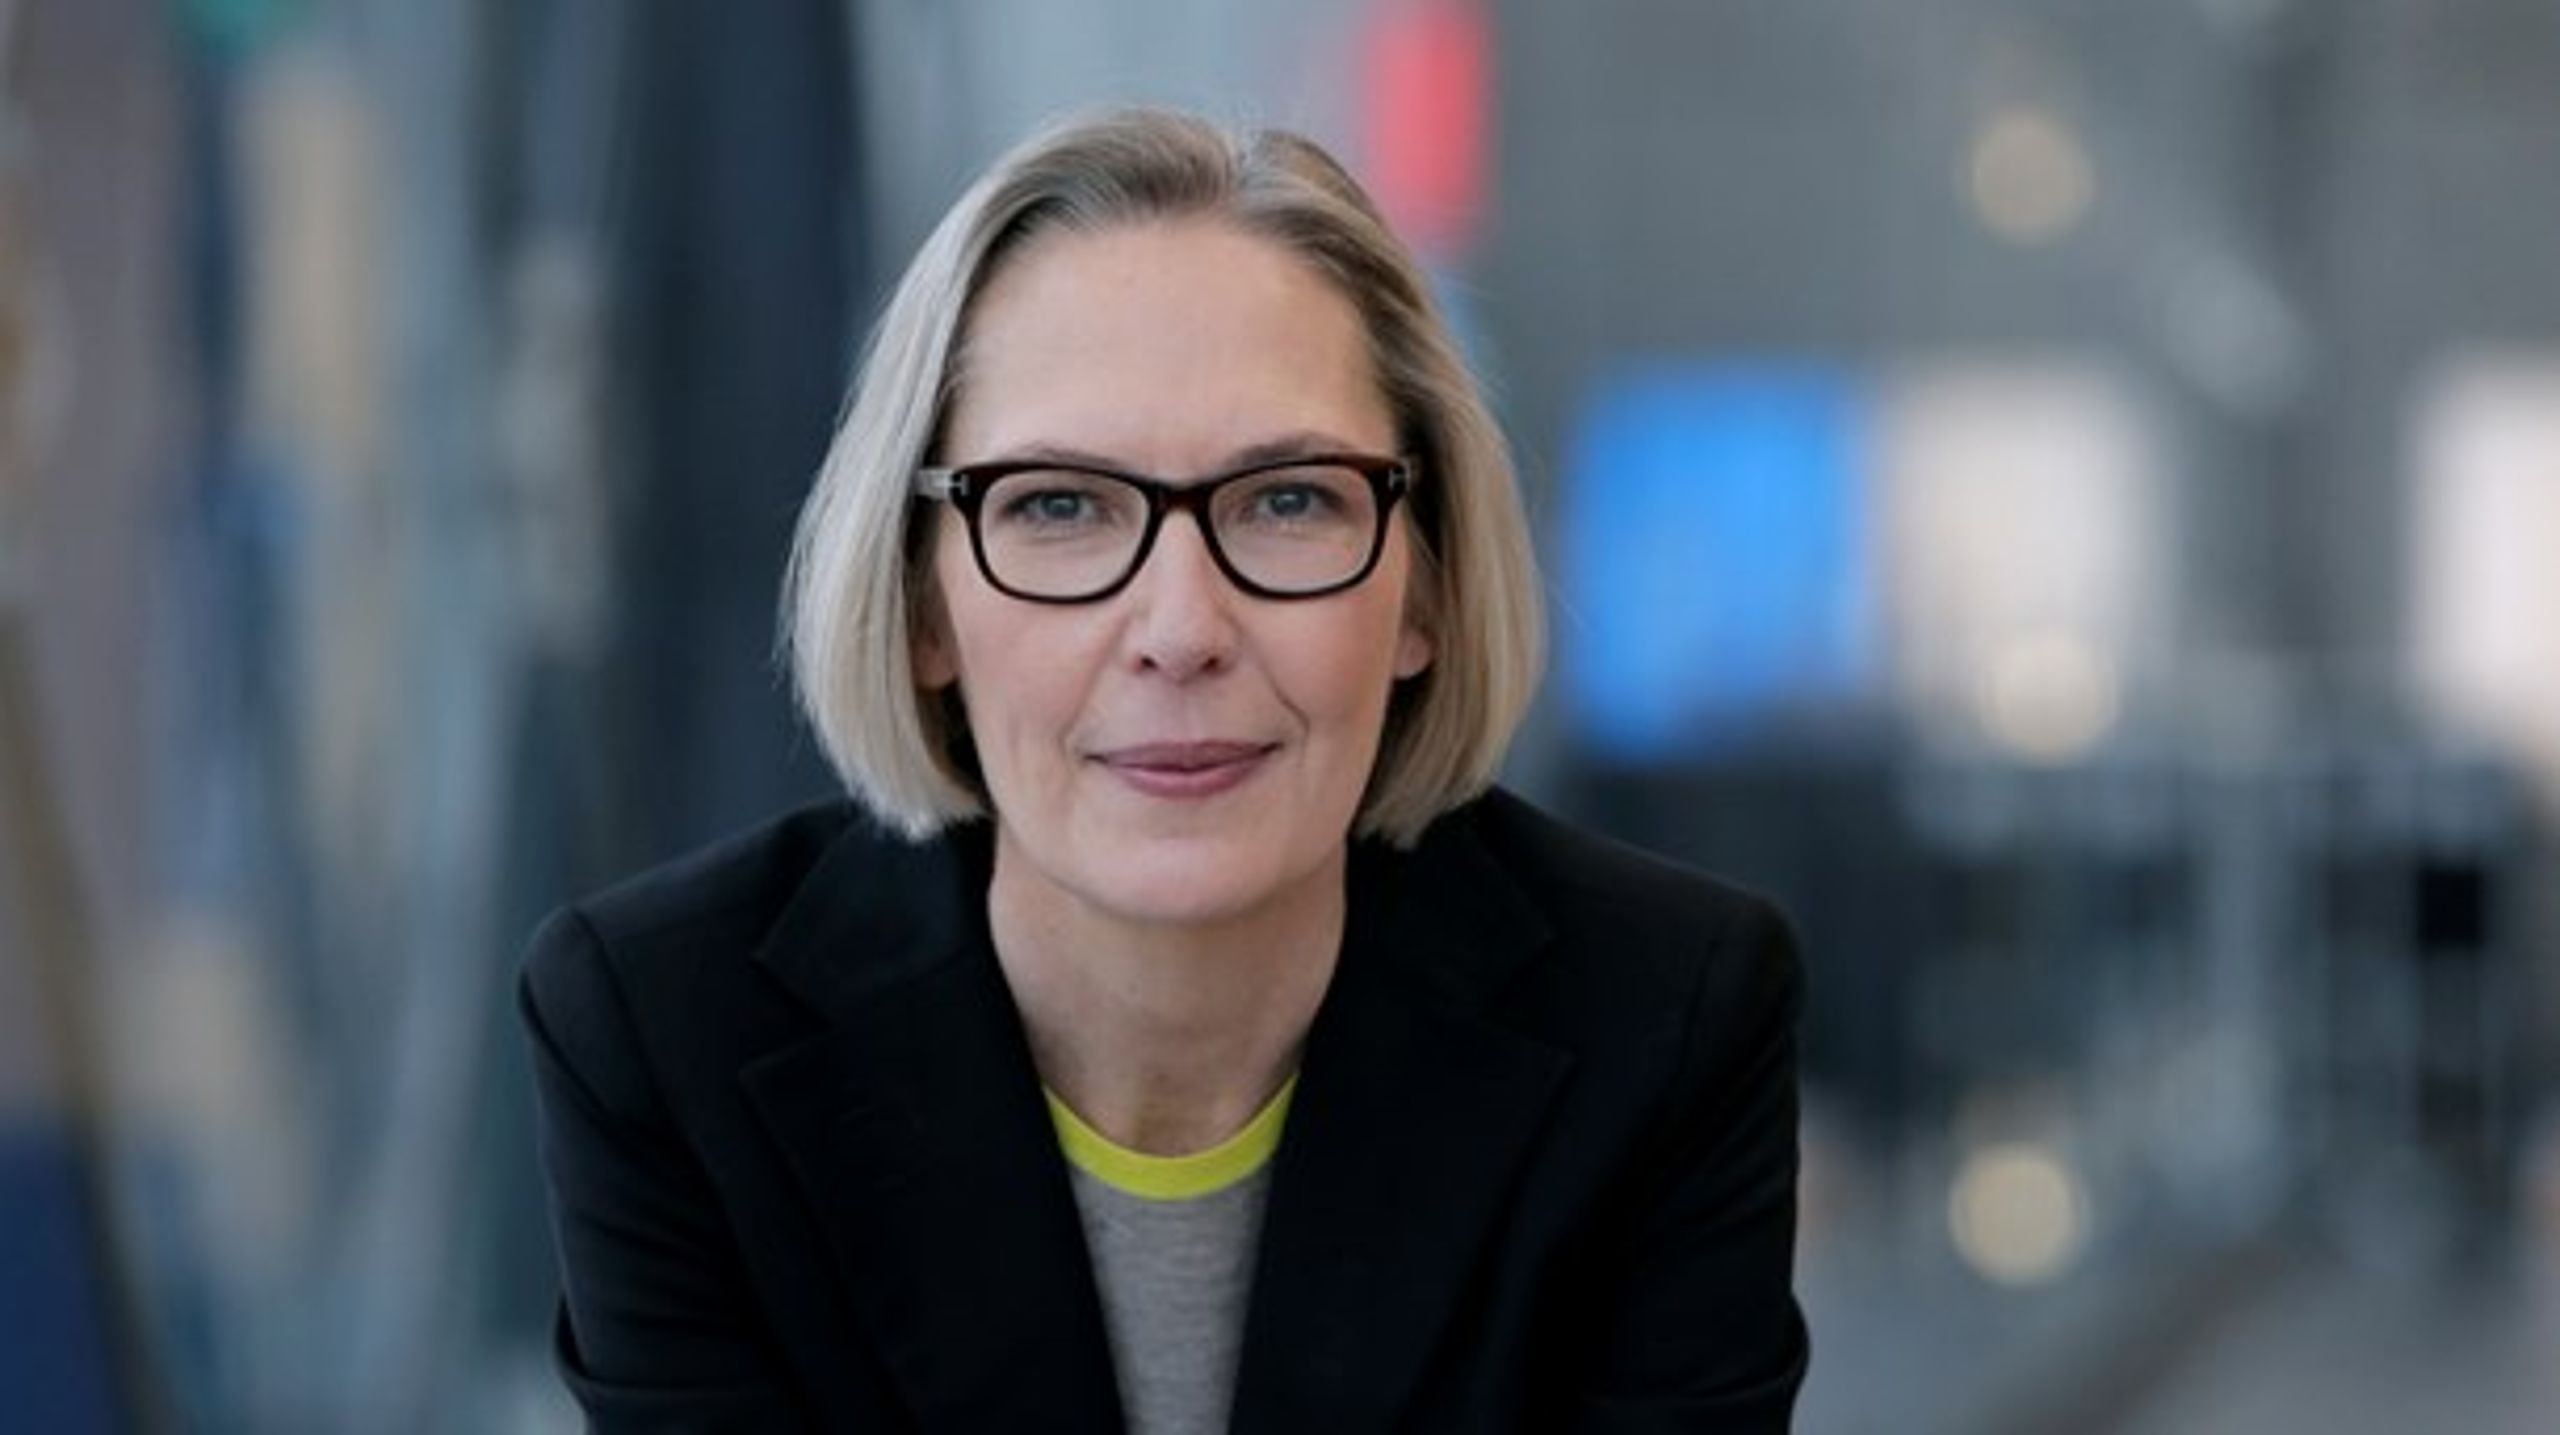 Maria Rørbye Rønn tager besparelserne til efterretning og afviser at træde tilbage som generaldirektør.